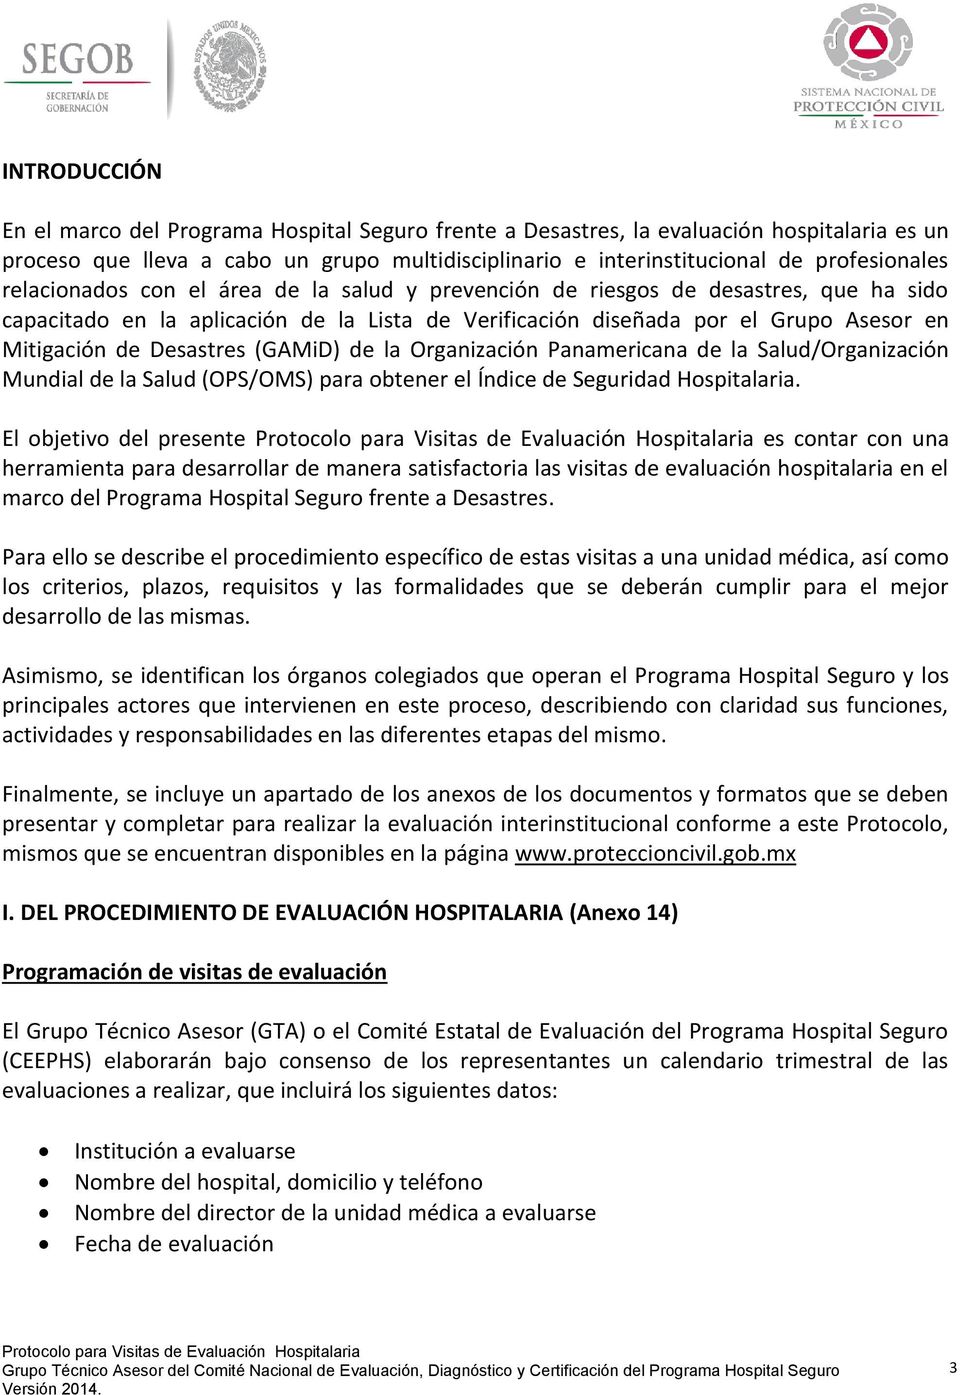 (GAMiD) de la Organización Panamericana de la Salud/Organización Mundial de la Salud (OPS/OMS) para obtener el Índice de Seguridad Hospitalaria.